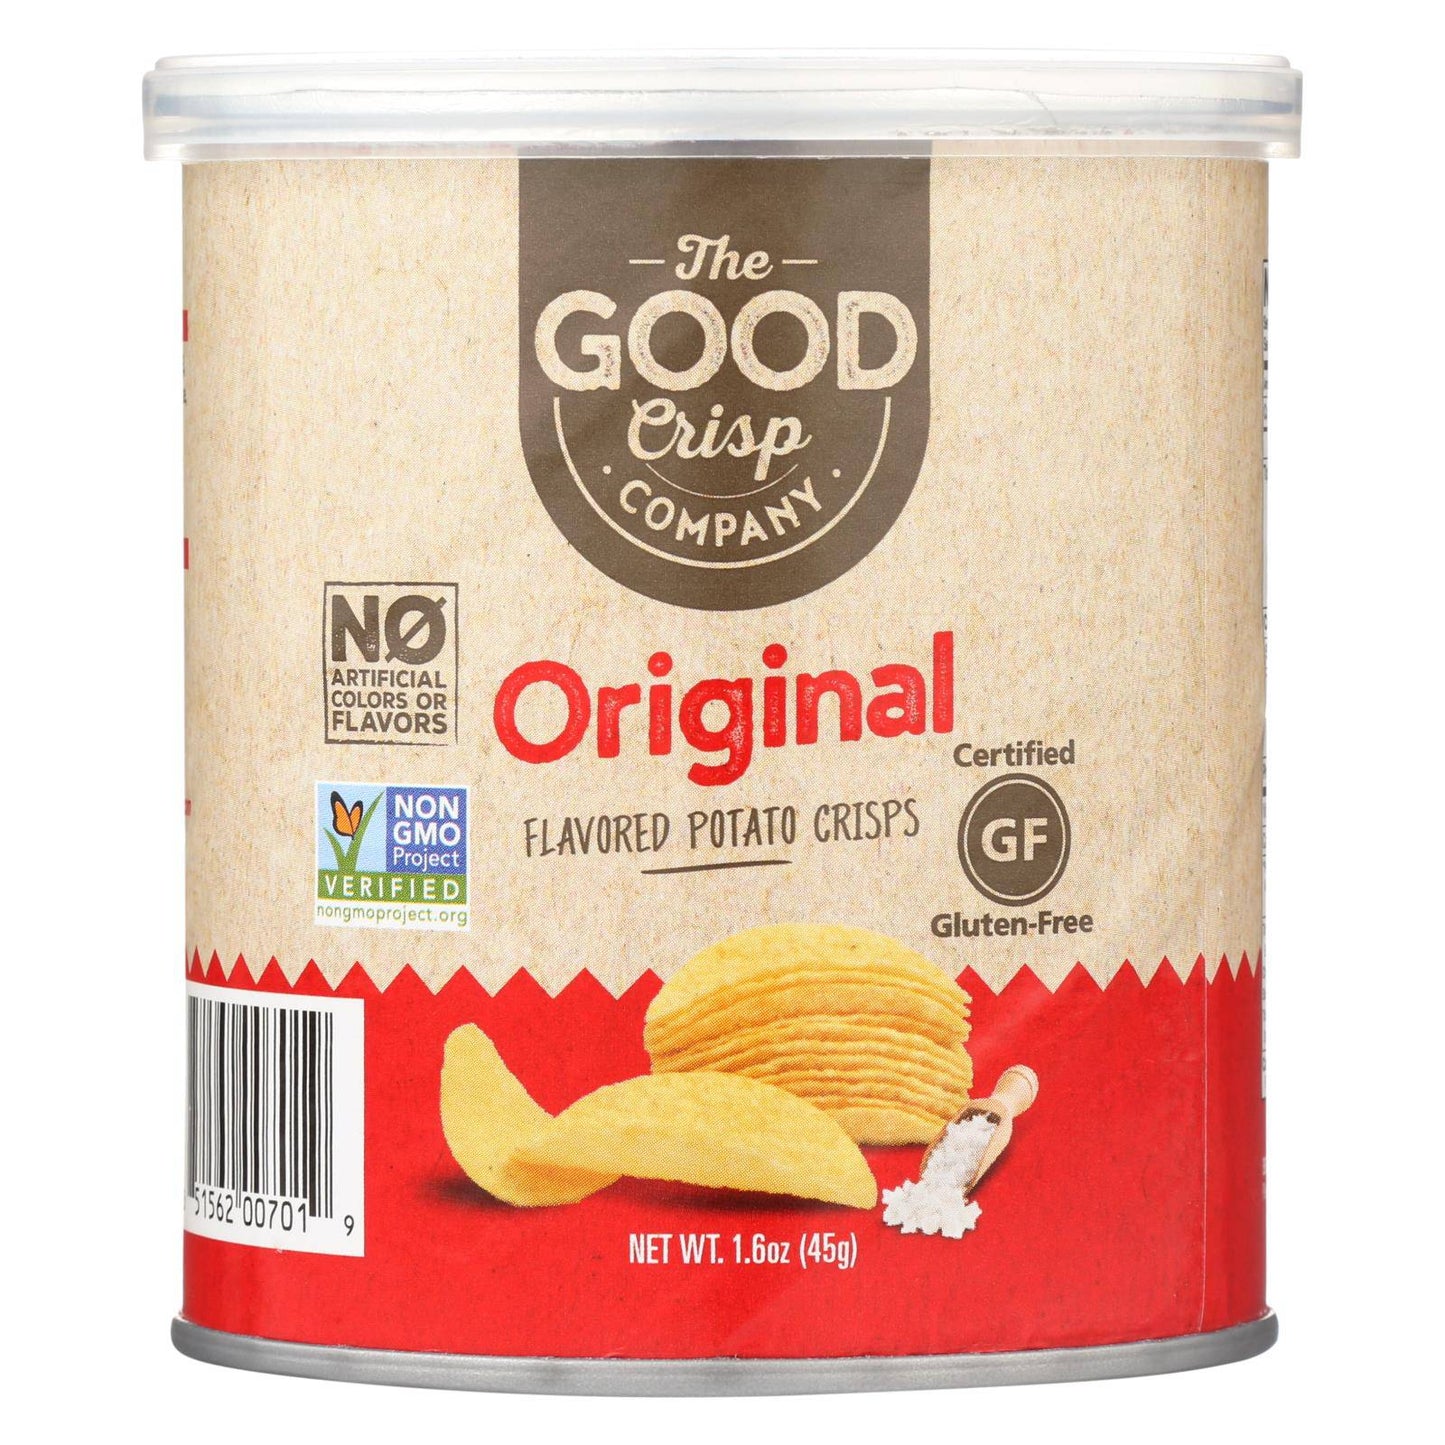 Buy The Good Crisp Company Potato Crisps - Original - Case Of 12 - 1.6 Oz  at OnlyNaturals.us